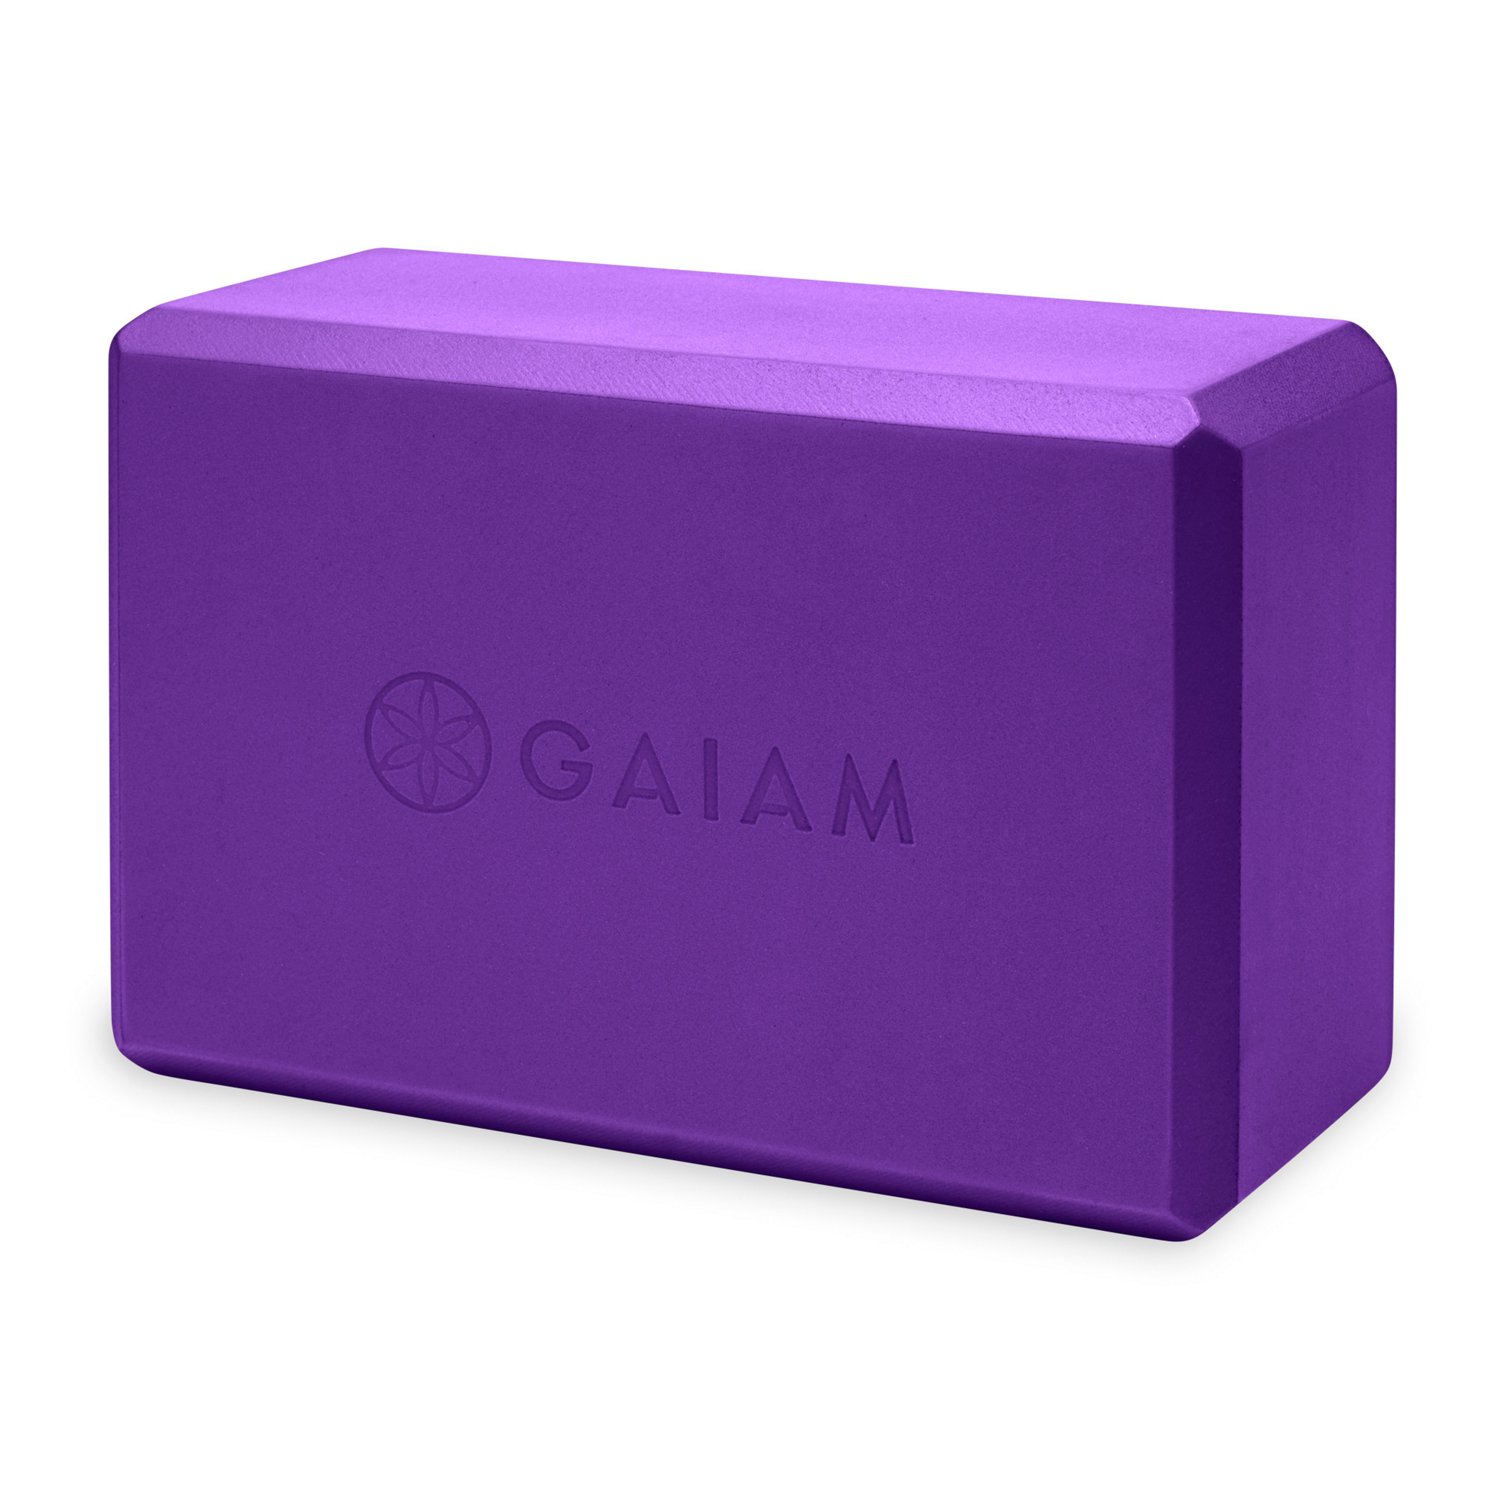 Gaiam Yoga Block                                                                                                                 - view number 1 selected